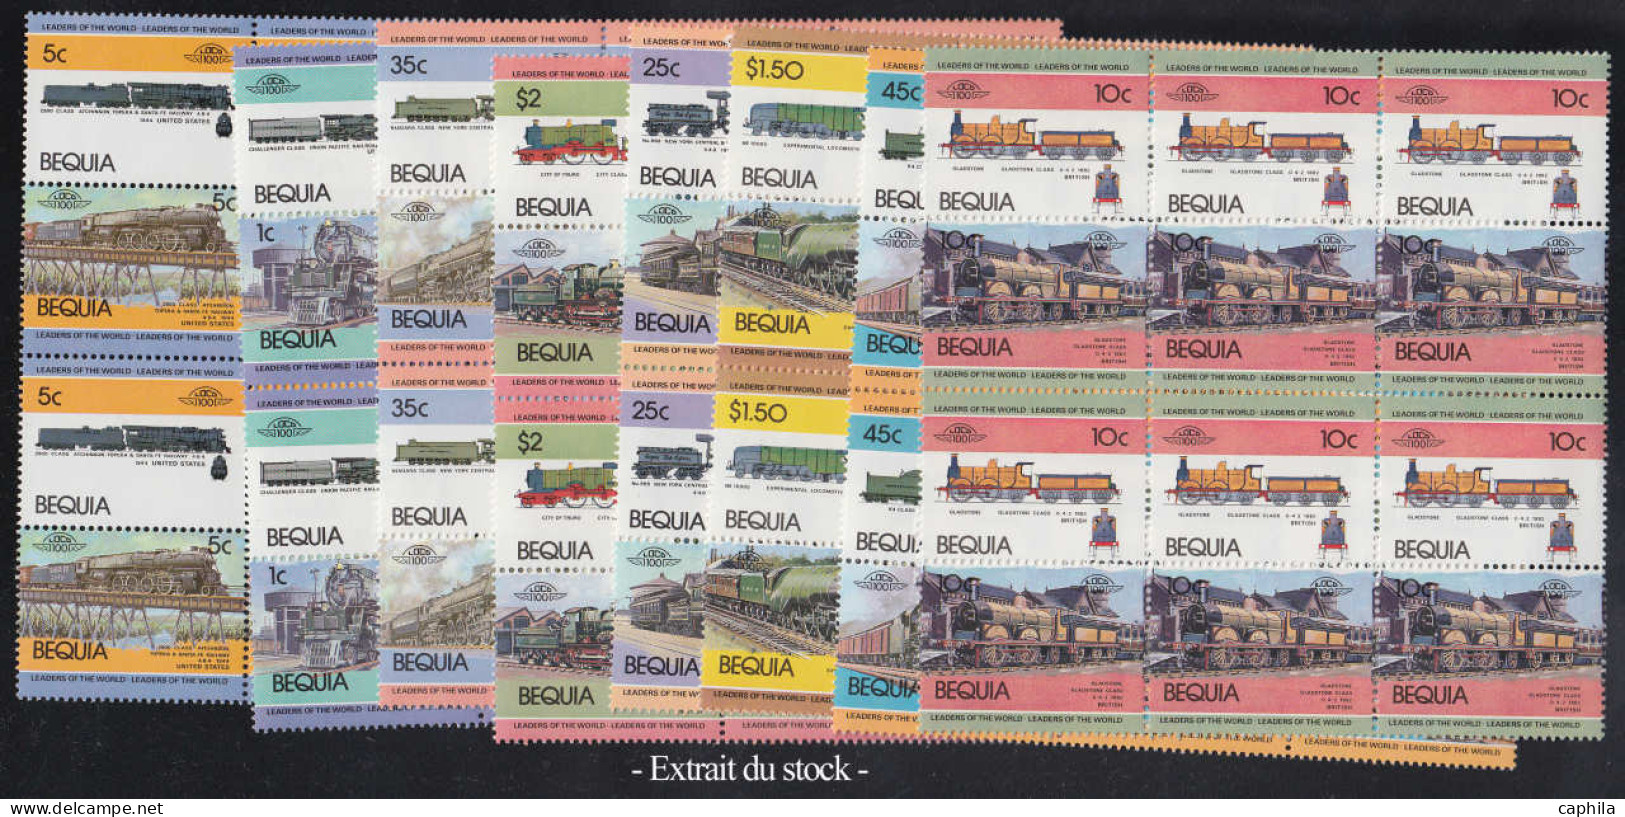 ** Trains - Lots & Collections - Petit stock en classeur de feuilles, généralement séries complètes motifs ferroviaires 